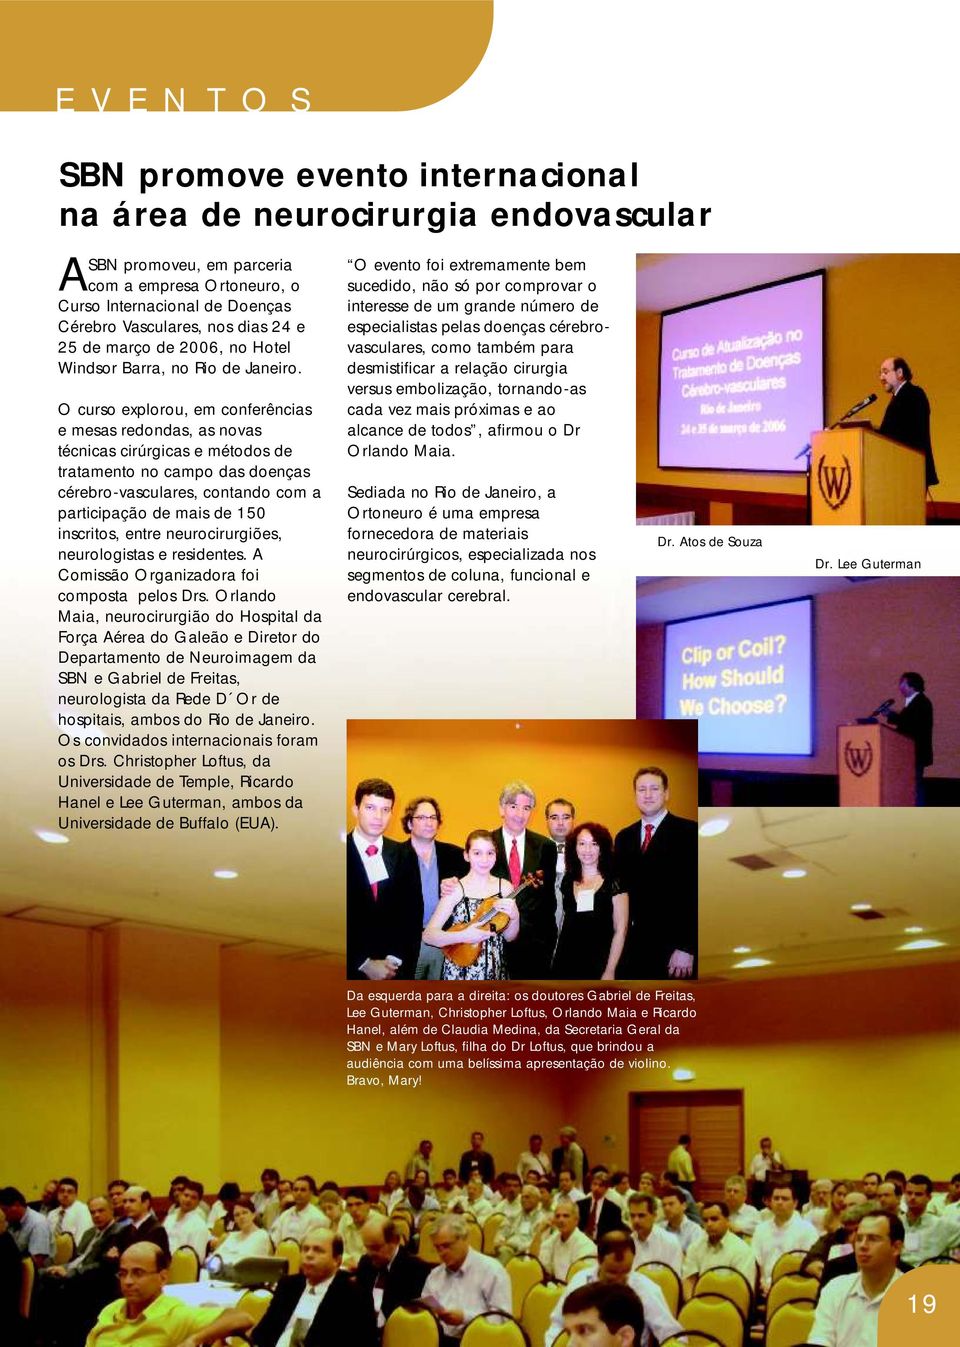 O curso explorou, em conferências e mesas redondas, as novas técnicas cirúrgicas e métodos de tratamento no campo das doenças cérebro-vasculares, contando com a participação de mais de 150 inscritos,